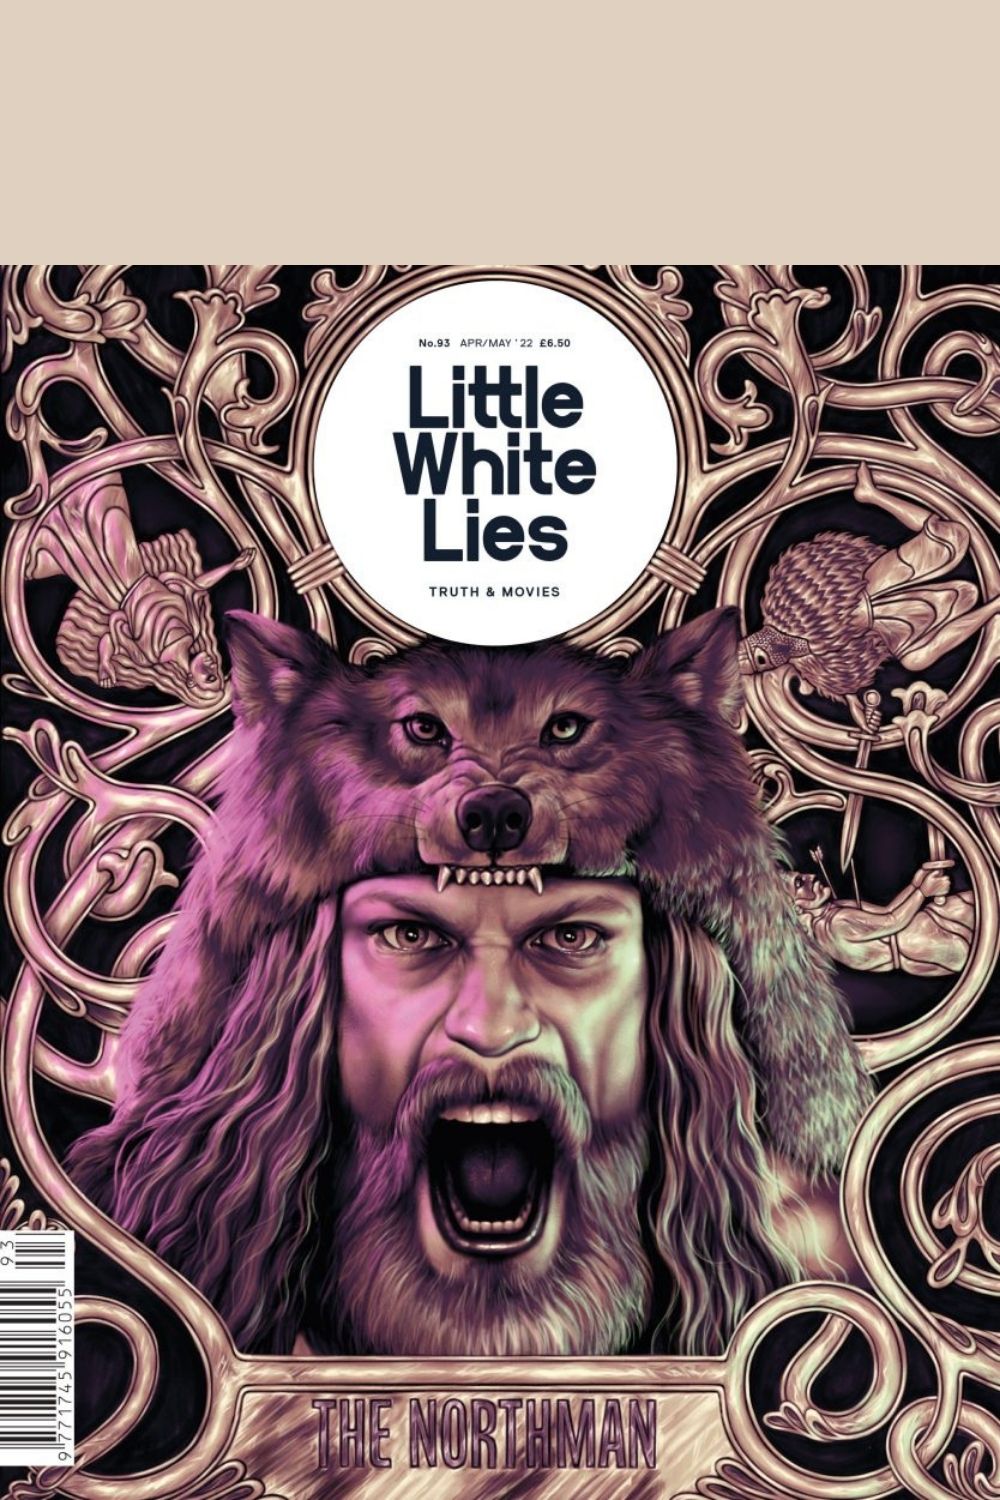 Little White Lies Magazine Issue 93 the Northman